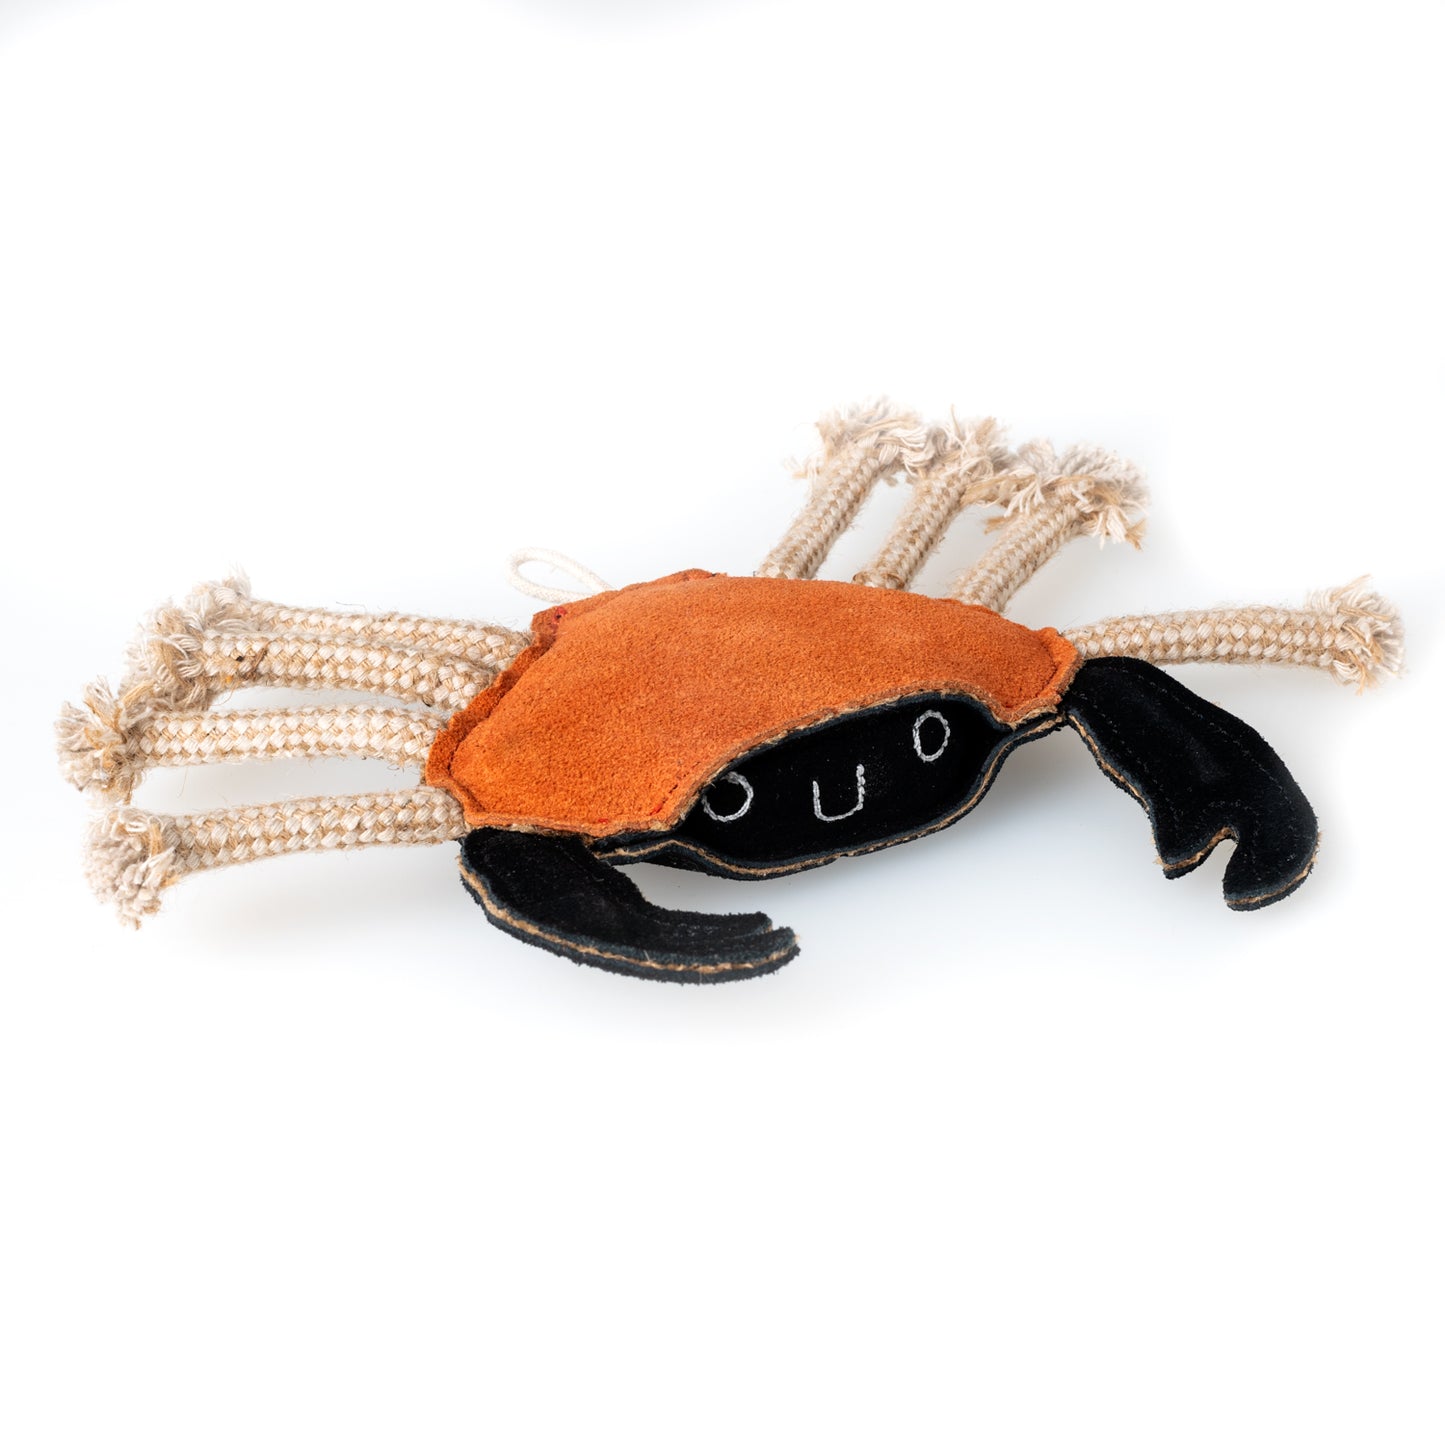 Carlos The Crab - Eco Friendly Dog Toy